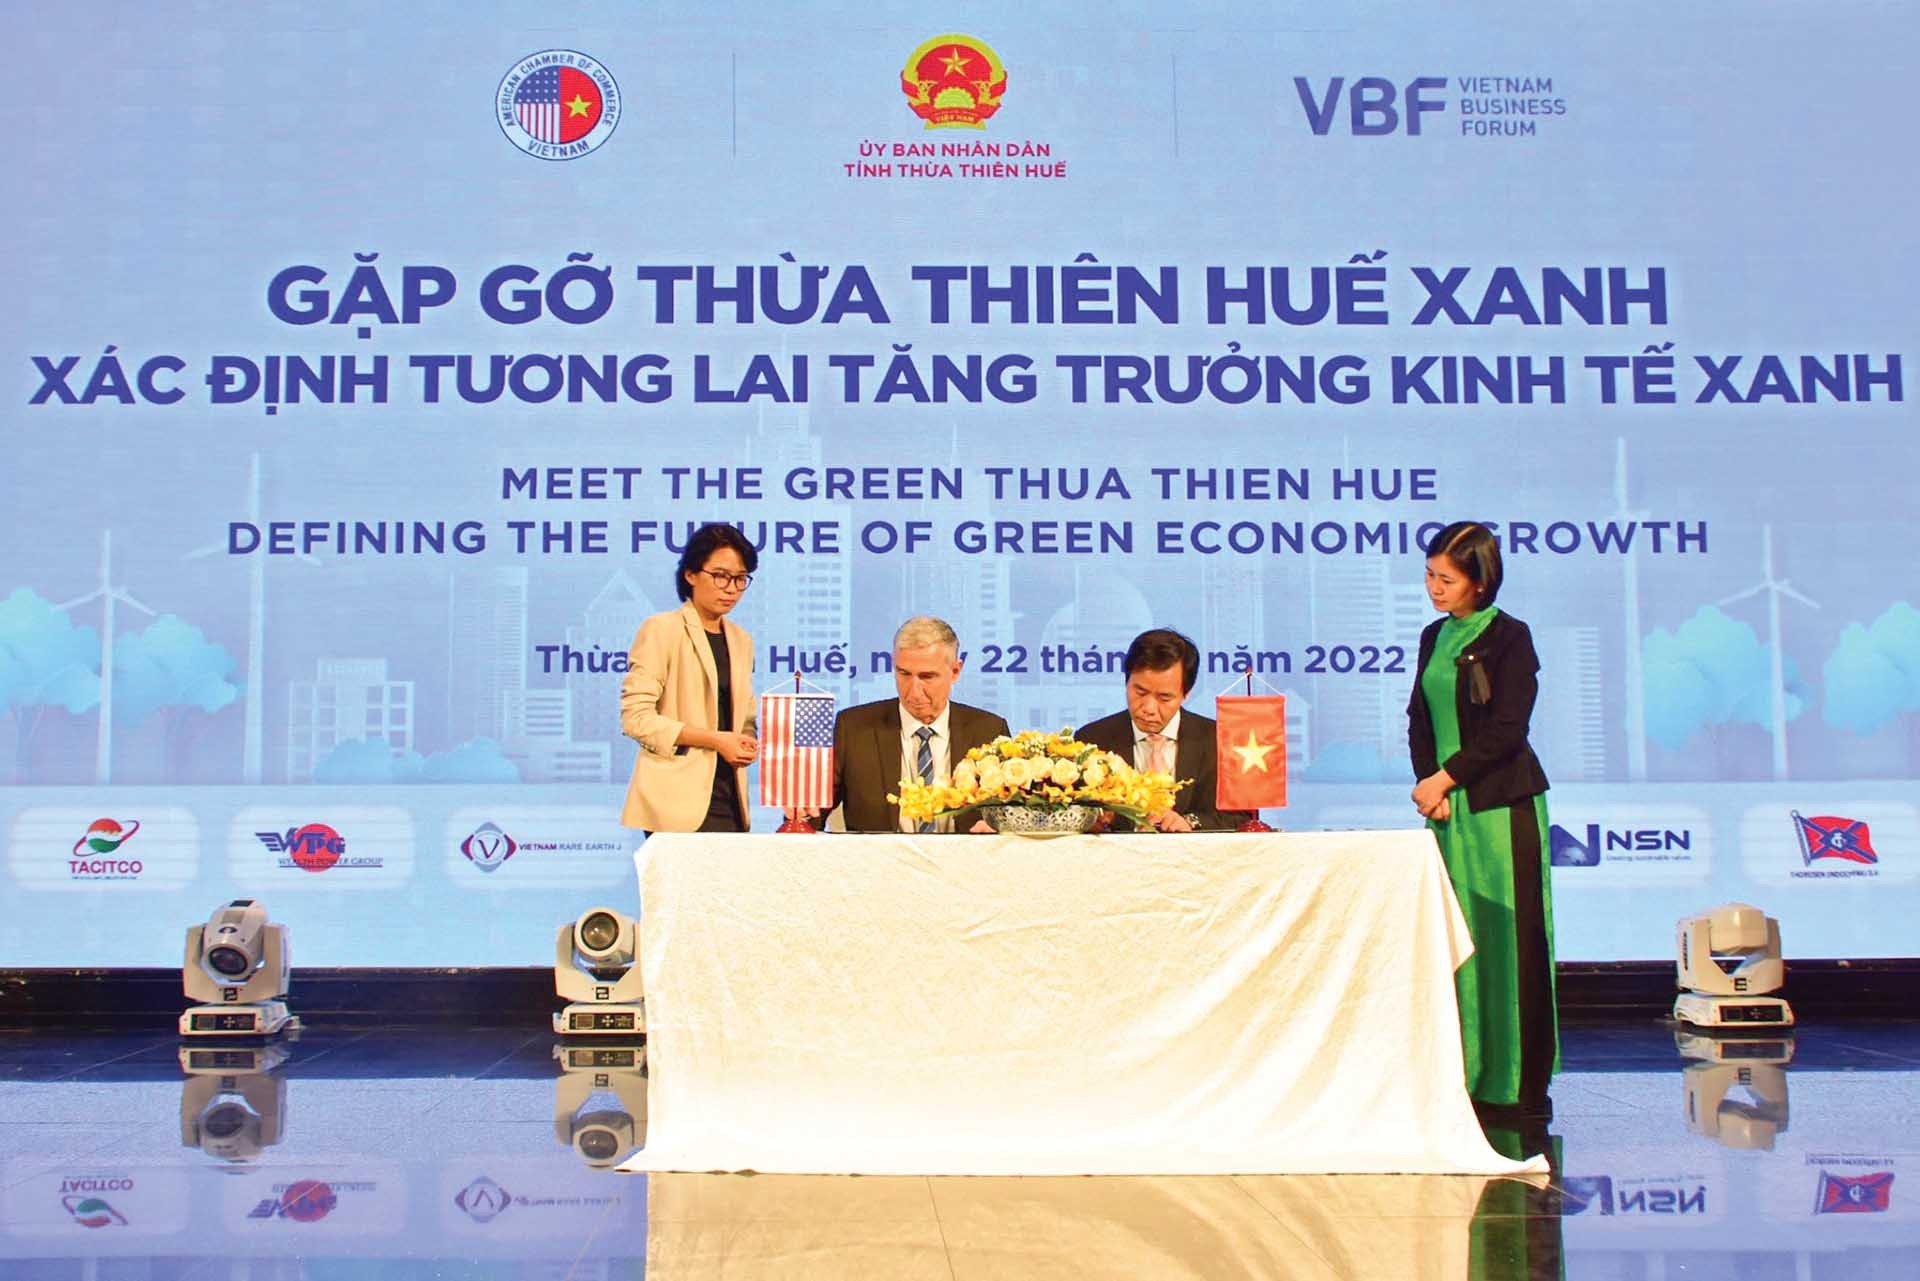 Ký kết hợp tác giữa UBND tỉnh Thừa Thiên Huế với Hiệp hội Thương mại Mỹ tại Việt Nam (AmCham) tại hội nghị “Gặp gỡ Thừa Thiên Huế xanh: xác định tương lai tăng trưởng kinh tế xanh”. (Ảnh: thuathienhue.gov)